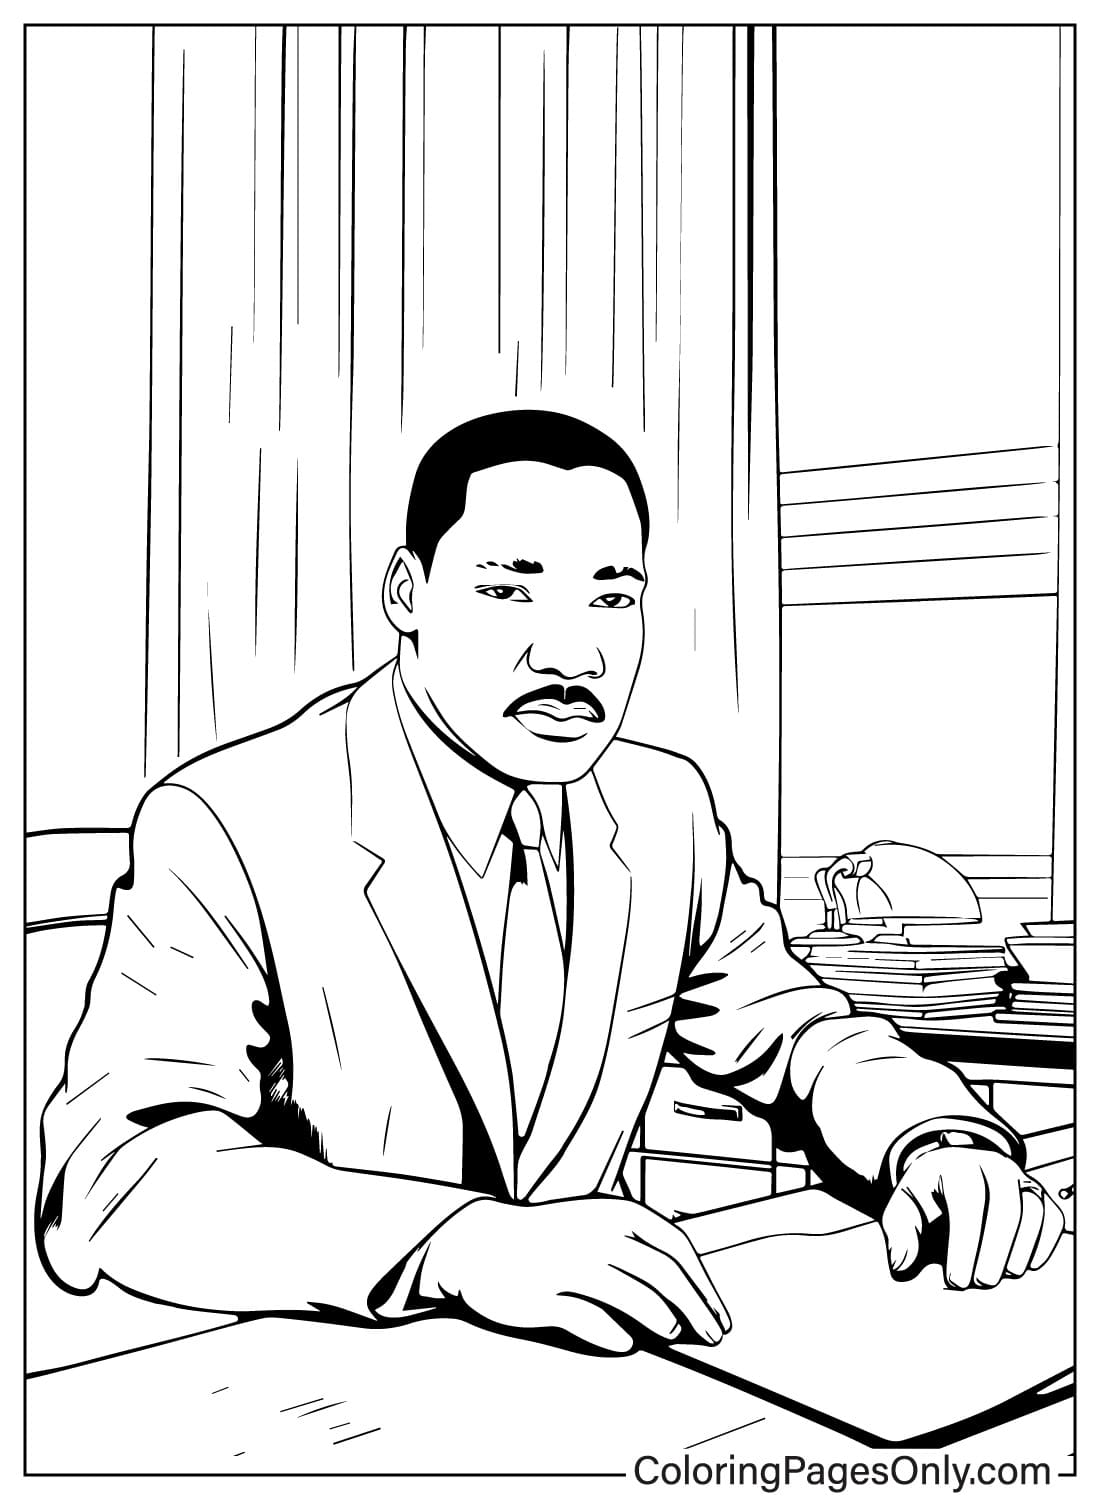 Página para colorir de Martin Luther King Jr de Martin Luther King Jr